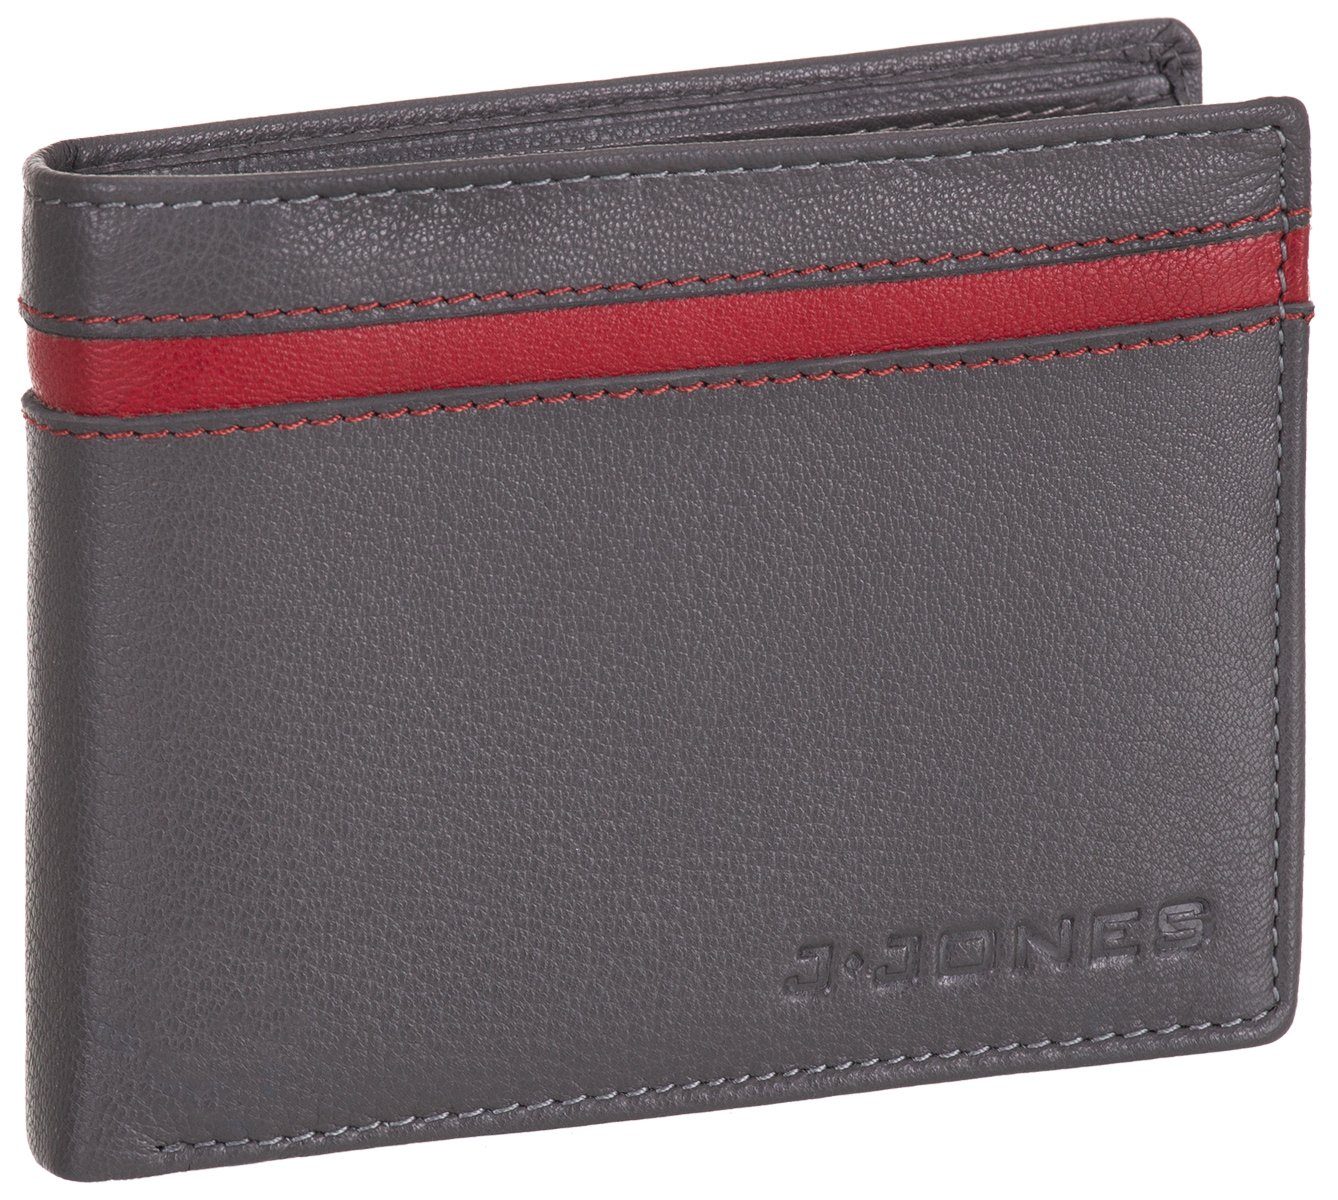 J.Jones Geldbörse, Geldbörse faltbar Echt Leder RFID-Schutz mit Münzfach Portemonnaie Geldbeutel grau